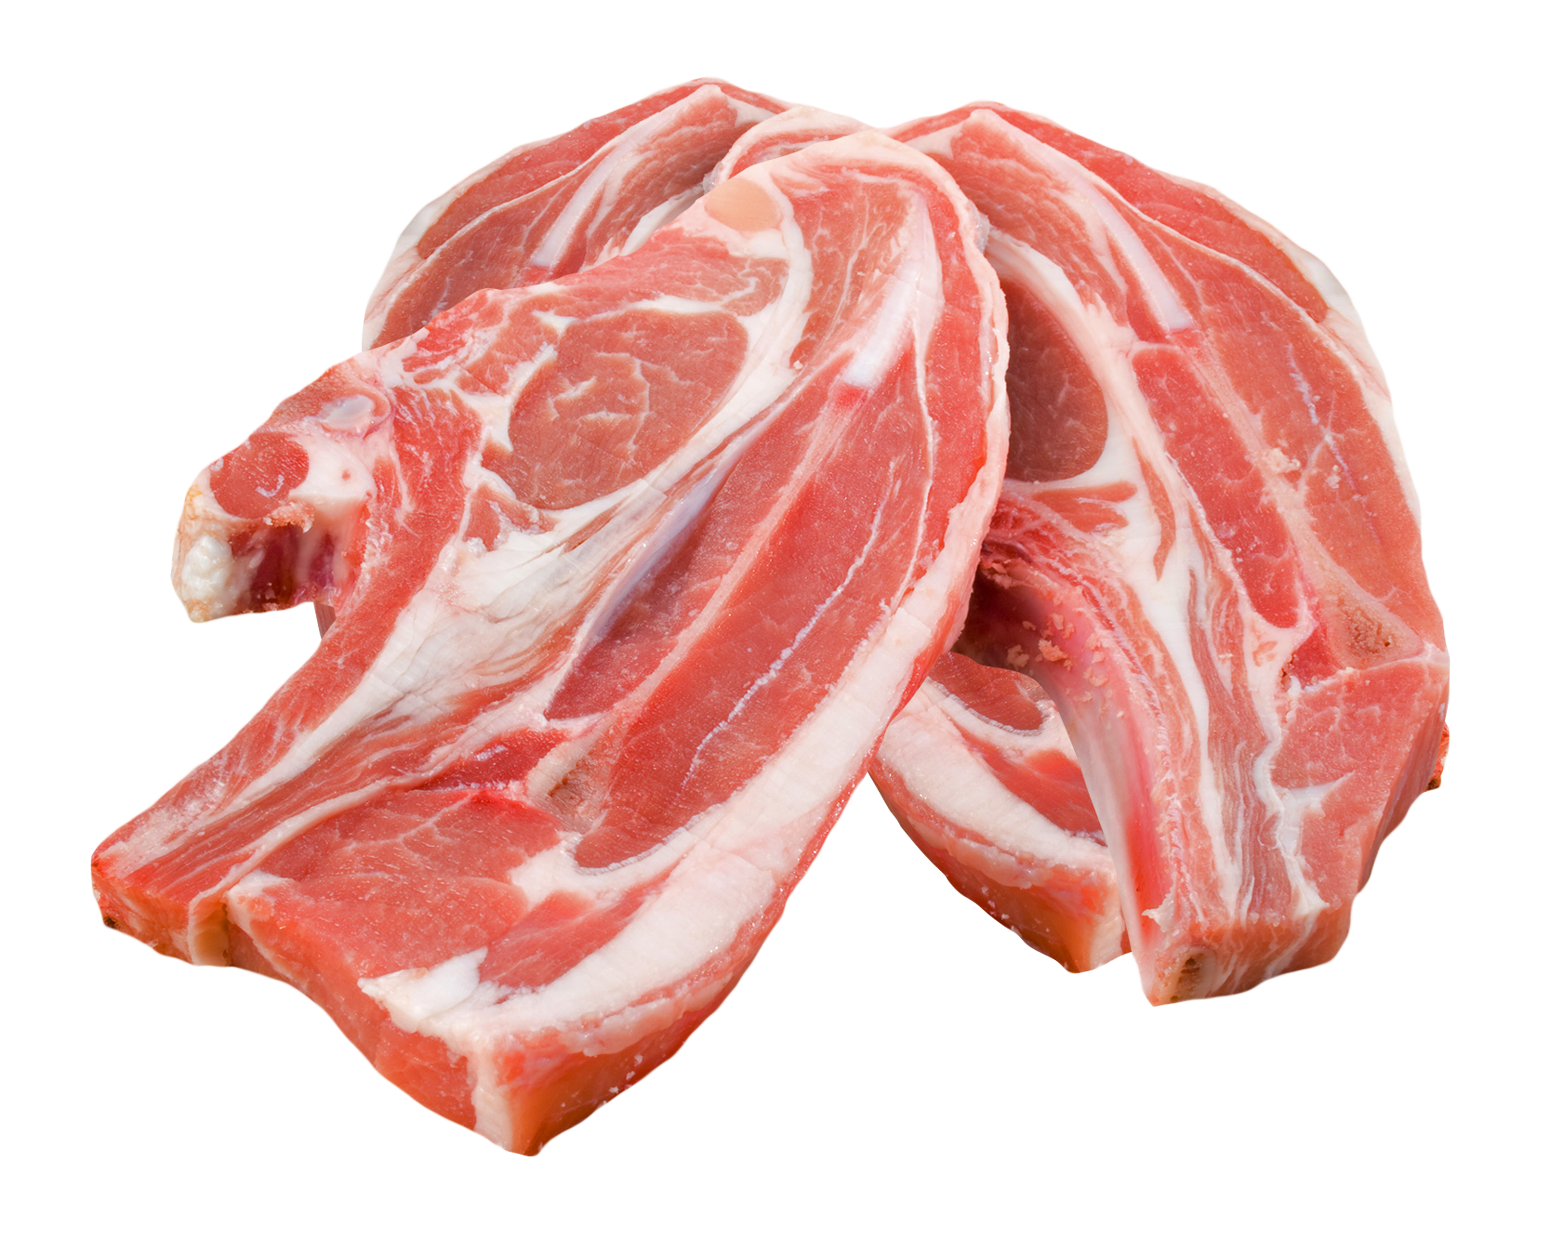 Carne de porco